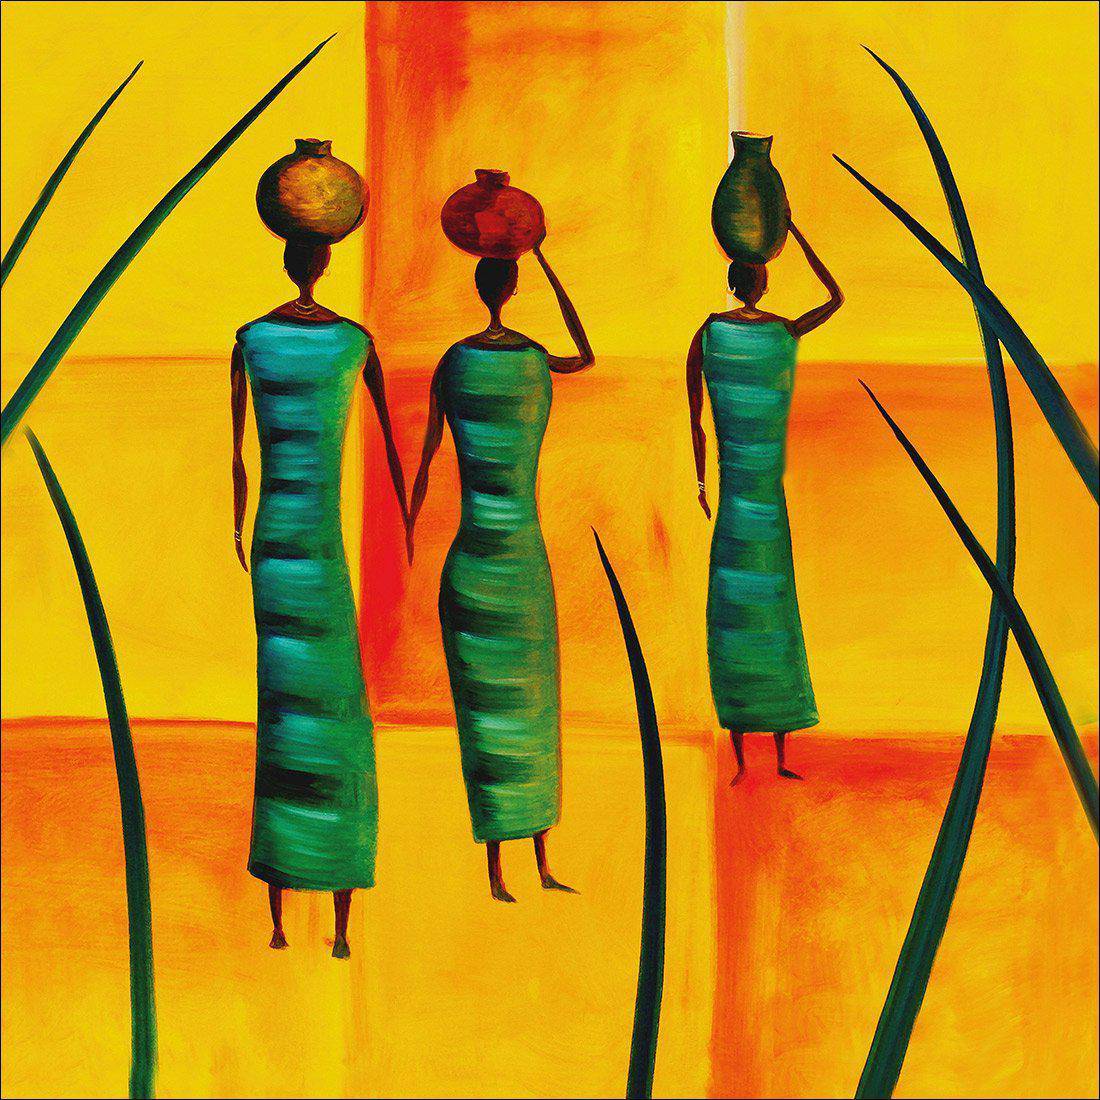 Three African Women Canvas Art-Canvas-Wall Art Designs-30x30cm-Canvas - No Frame-Wall Art Designs